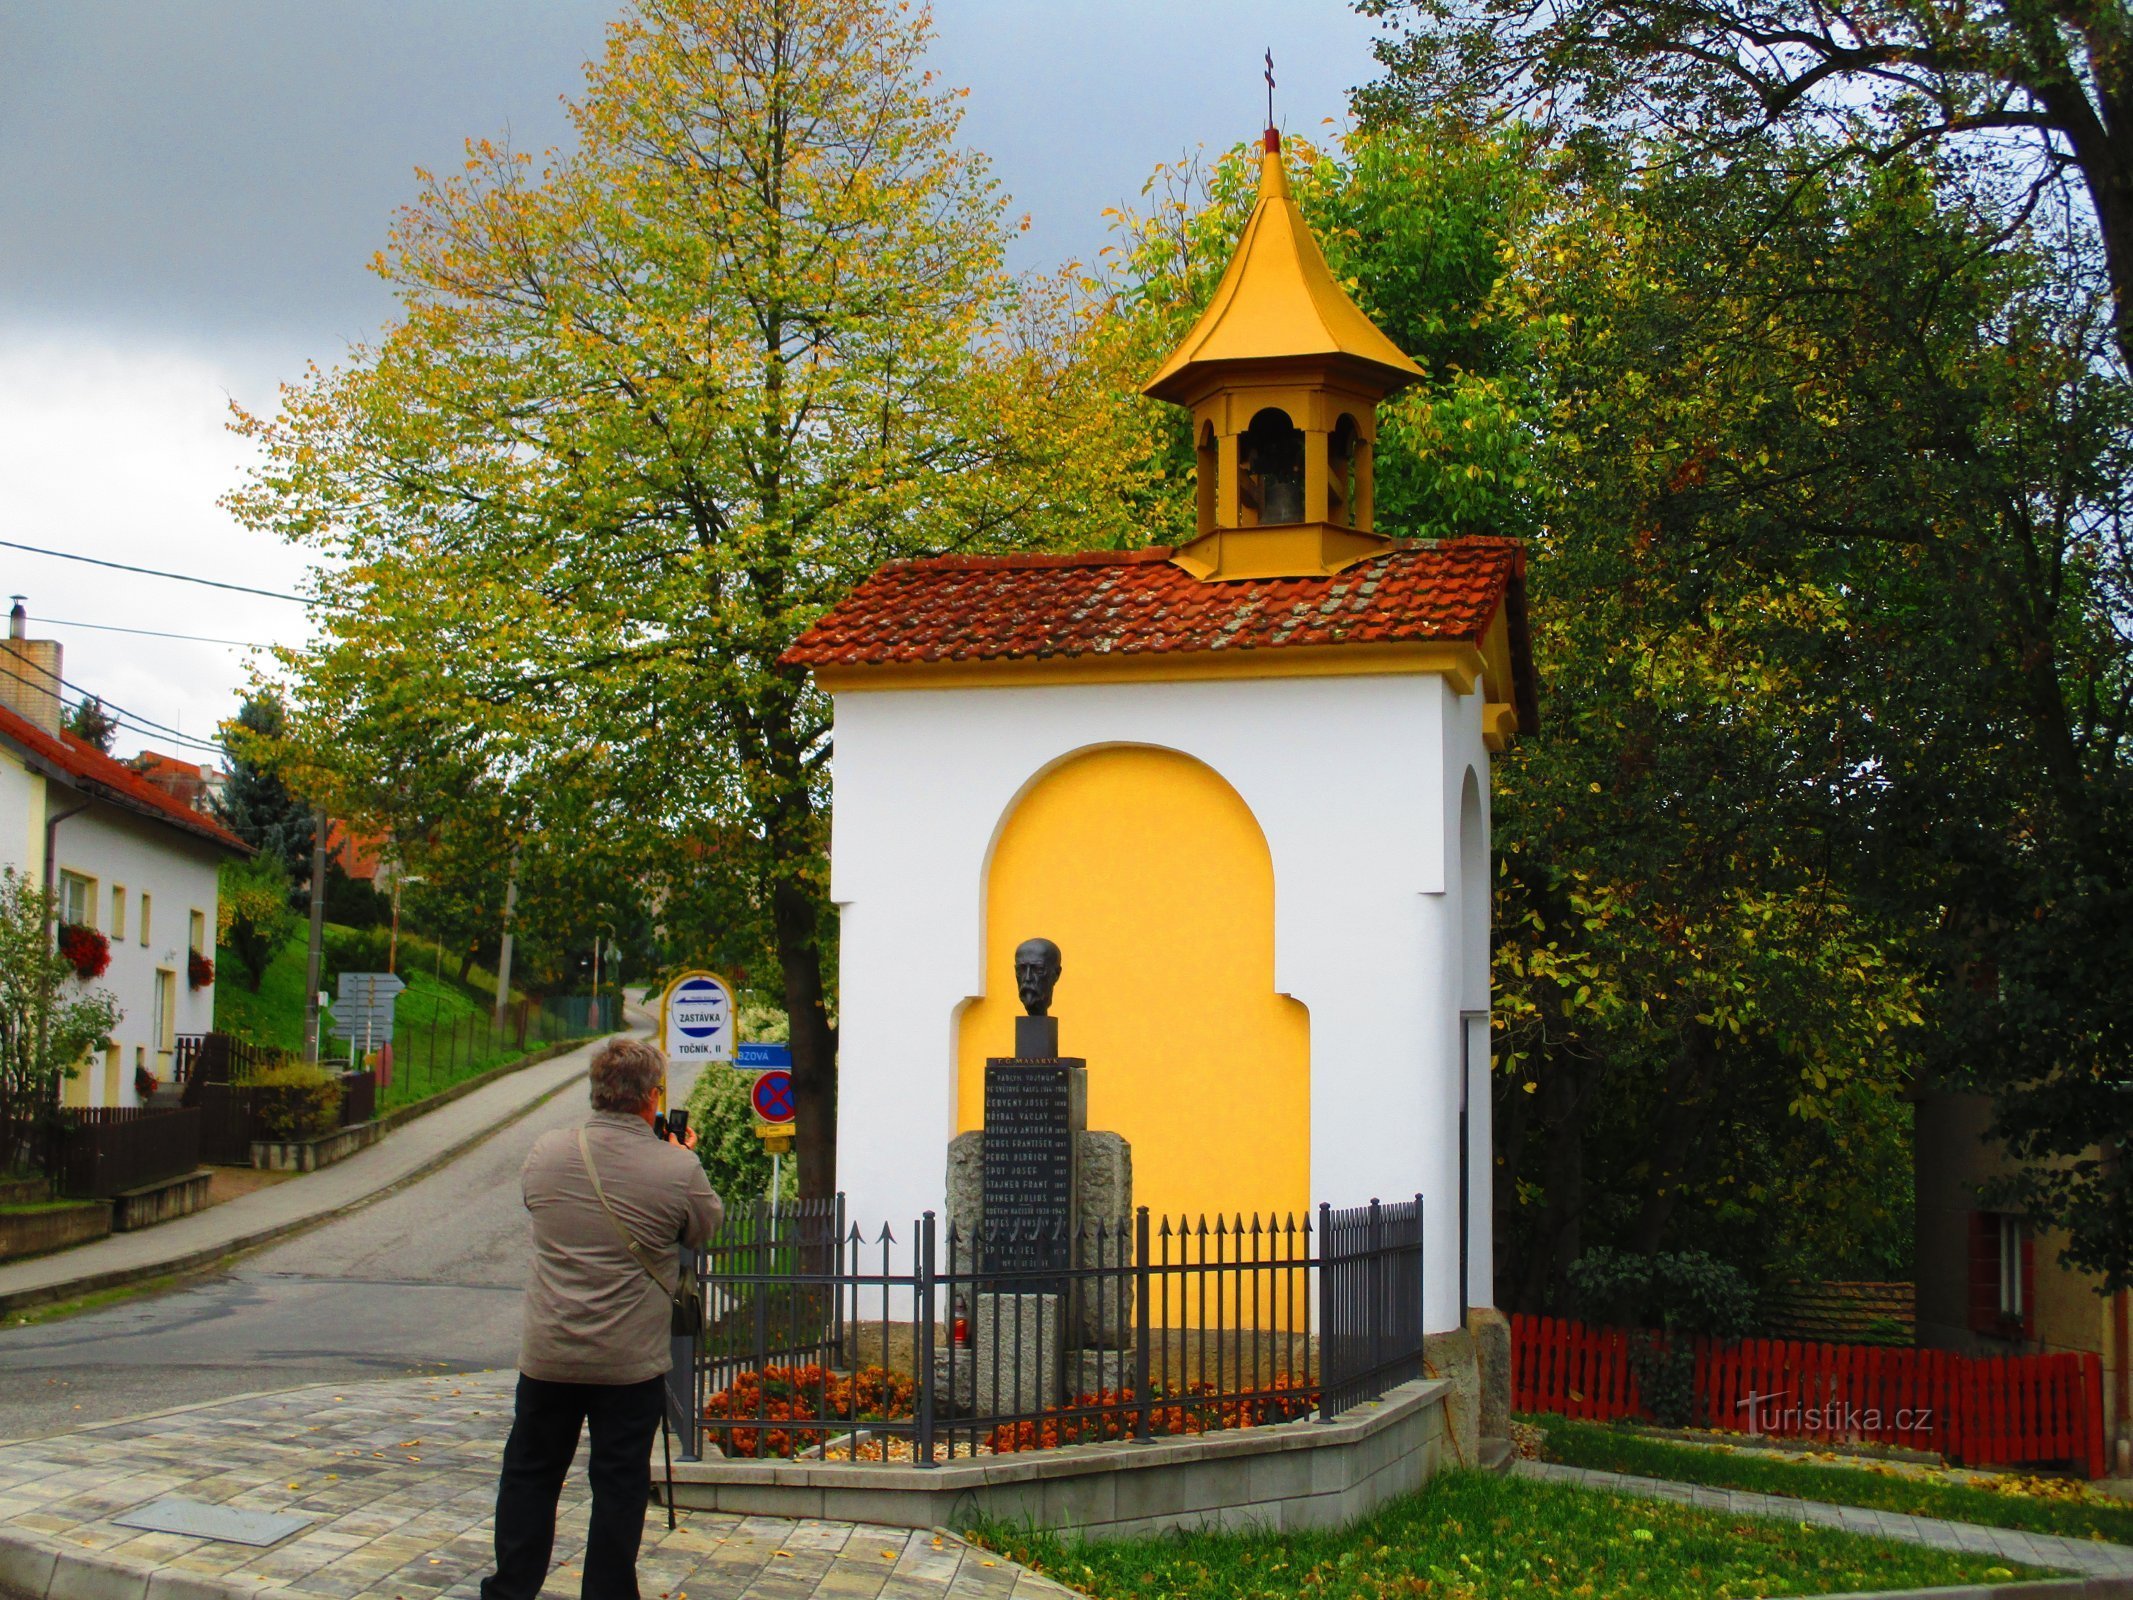 Kaplica św. Jan Nepomucký we wsi Točník